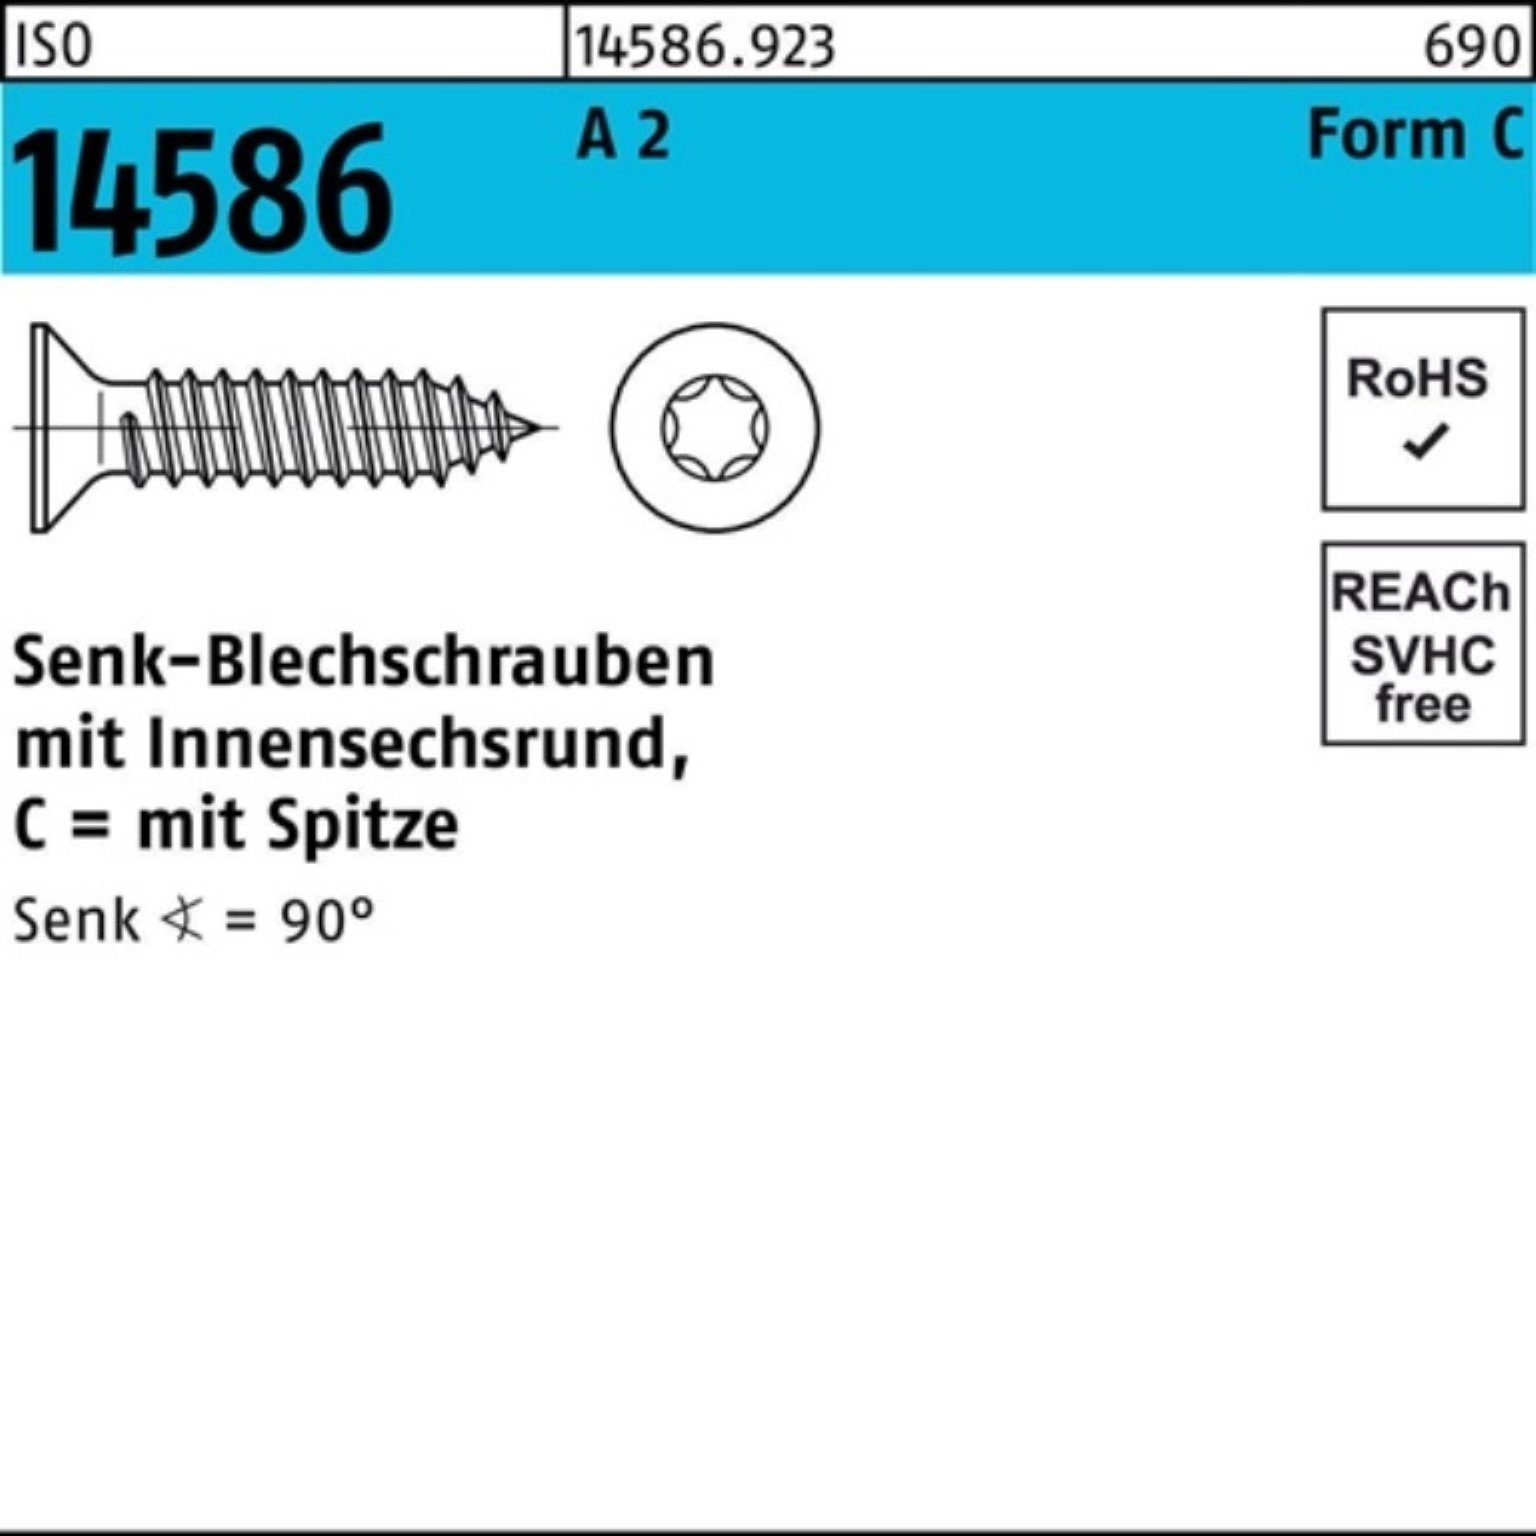 Reyher Schraube 500er 4,2x 14586 T20 Pack A ISR/Spitze Senkblechschraube 5 -C 2 ISO 32